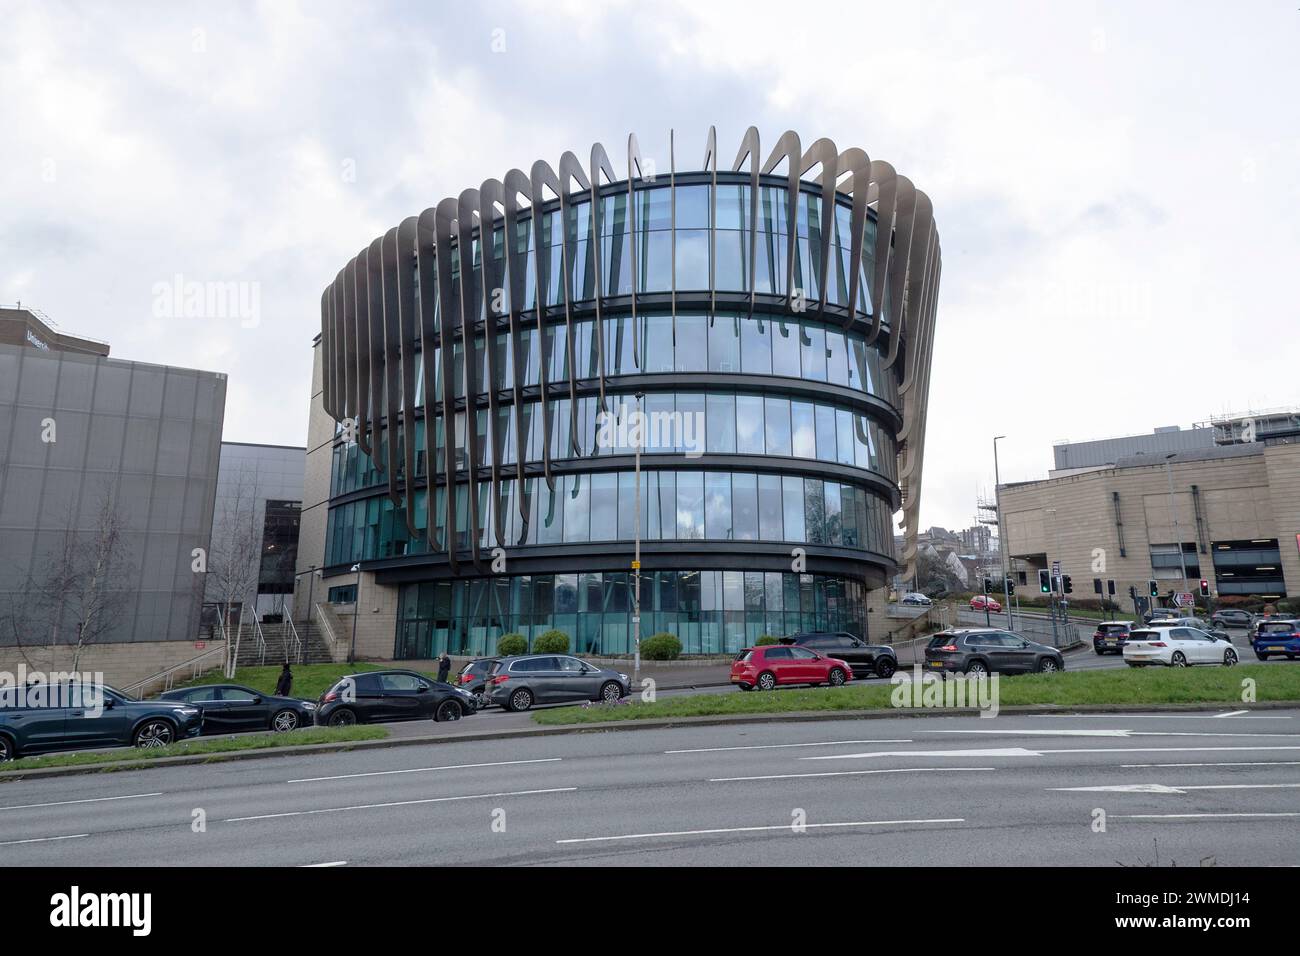 L'edificio architettonico di Oastler, l'Università di Huddersfield a Shore Head, visto da Wakefield Road al costo di 28 milioni di sterline Foto Stock